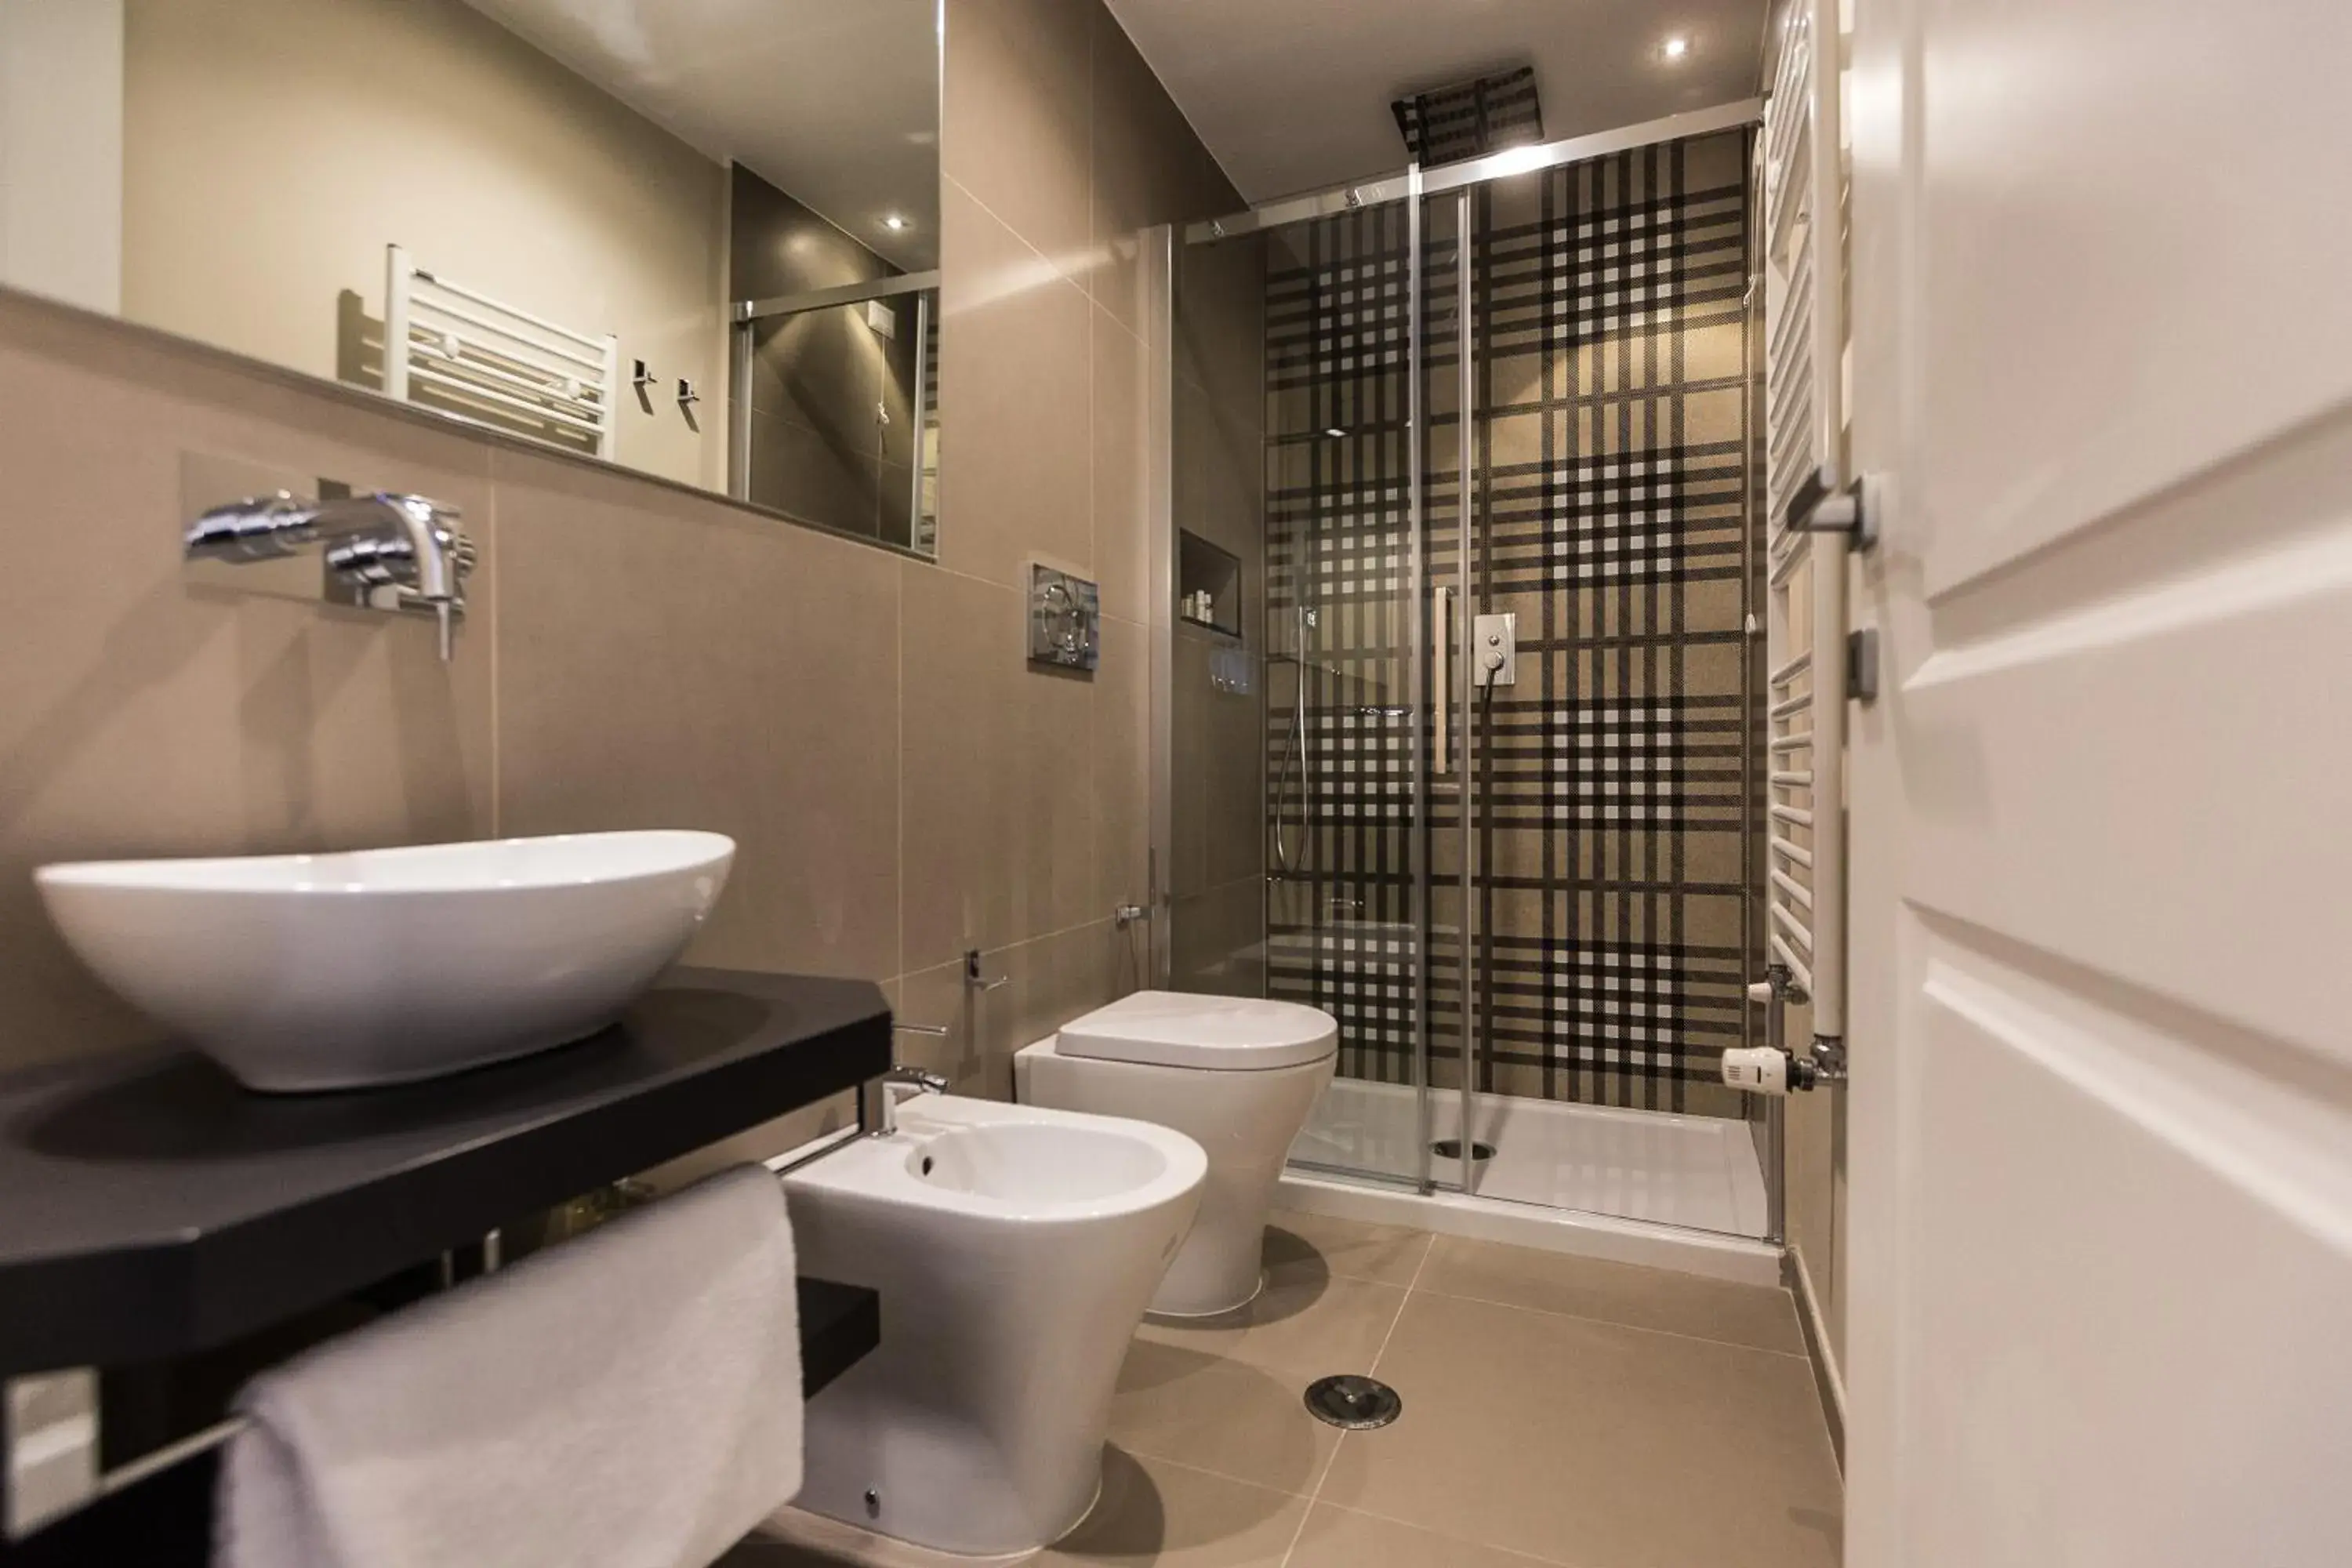 Shower, Bathroom in Palazzo Baj in Trastevere